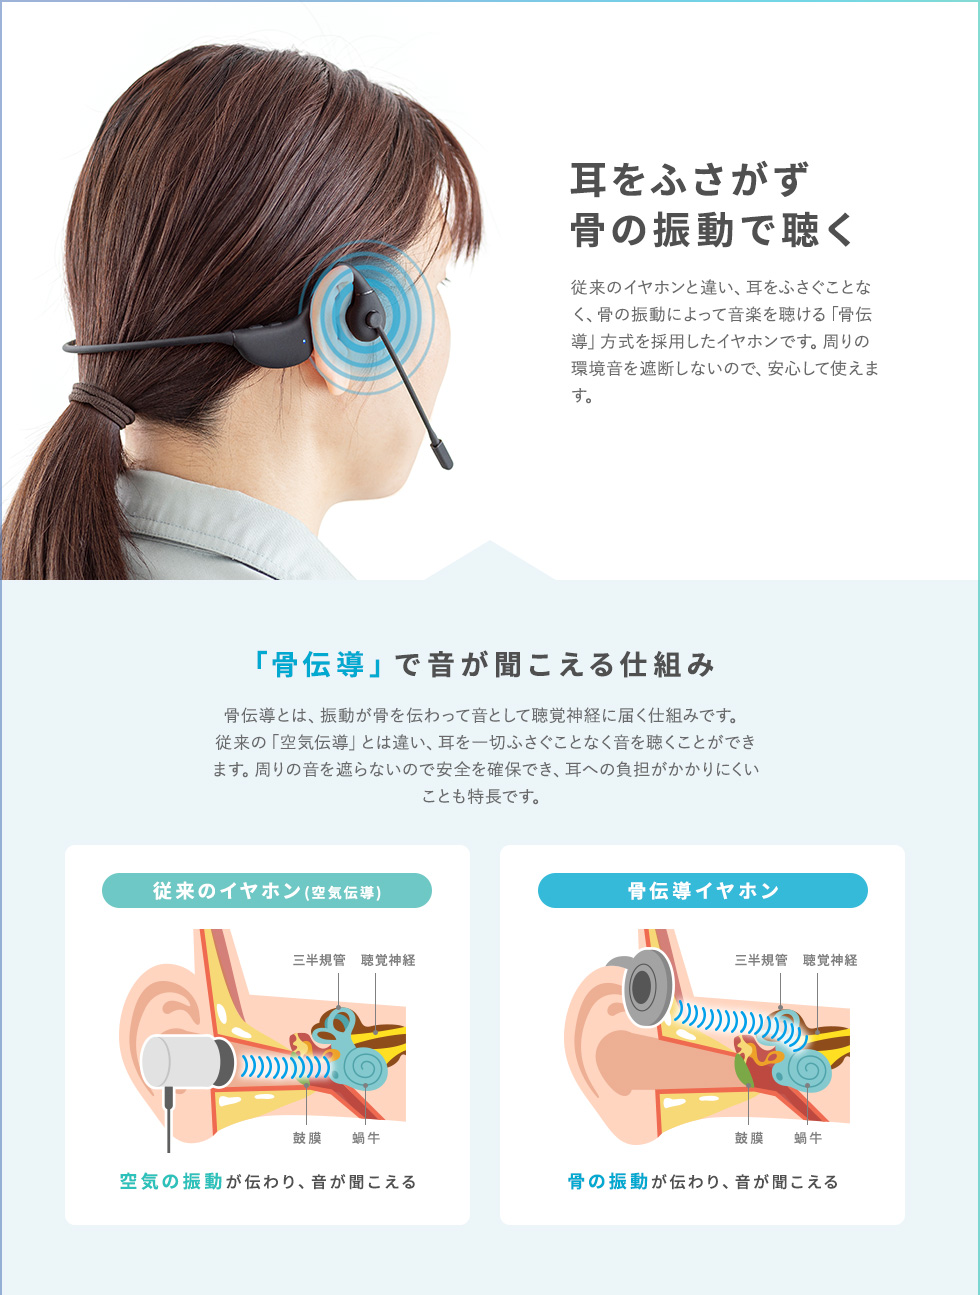 耳をふさがず 骨の振動で聴く 「骨伝導」で音が聞こえる仕組み